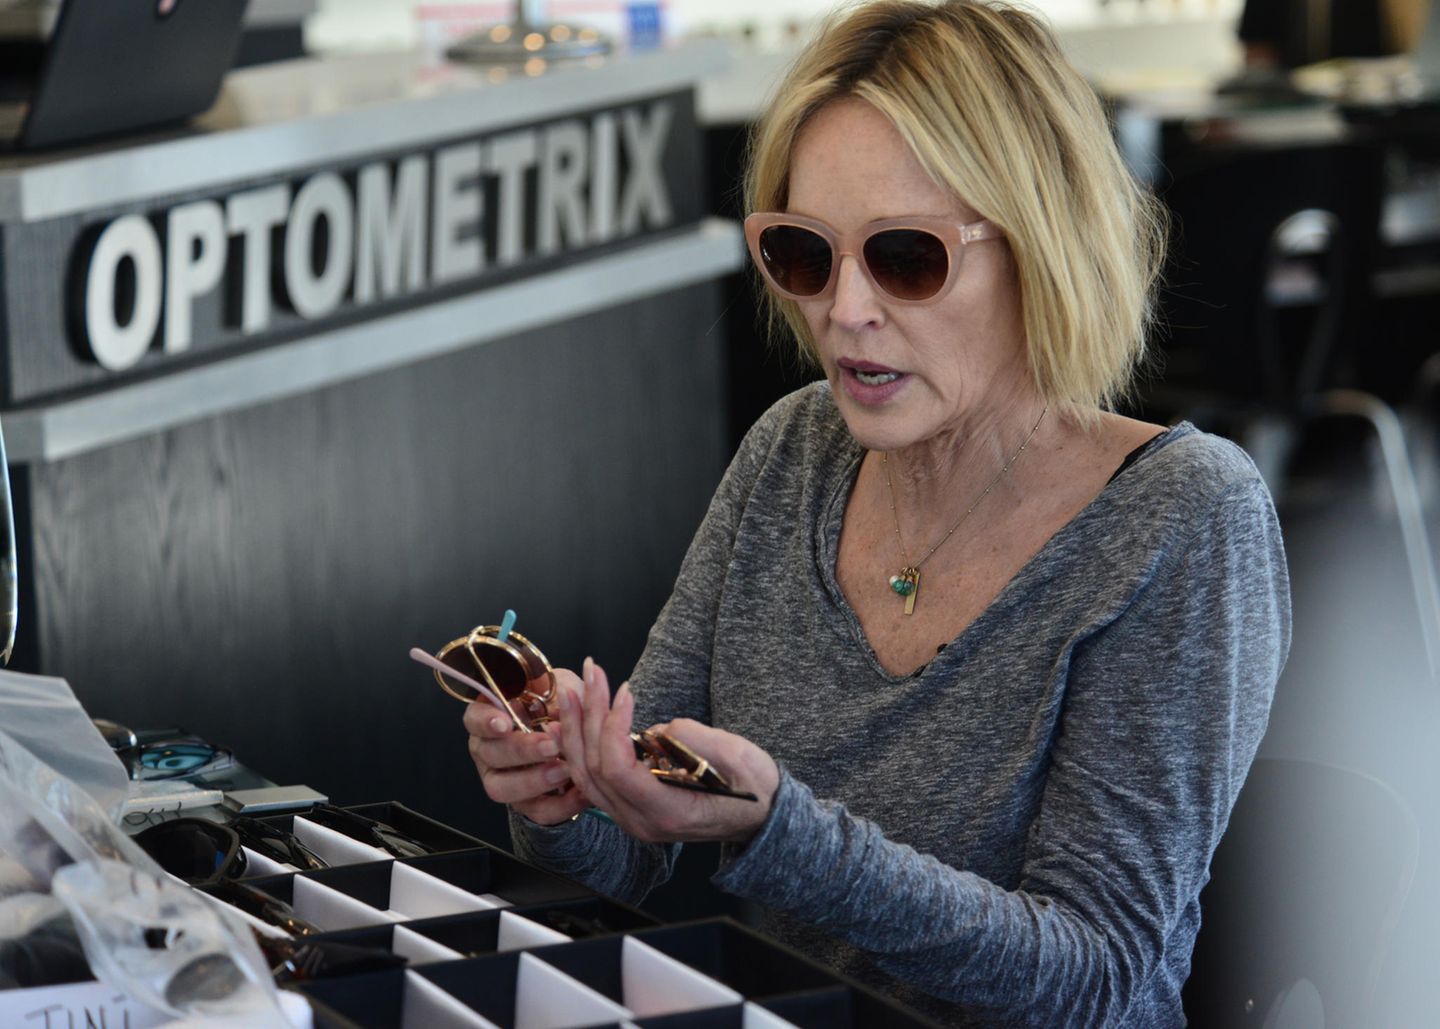 Der Hollywoodstar kann sich einfach nicht entscheiden: In Beverly Hills wird Sharon Stone beim Kaufen von über 20 Sonnenbrillen gesichtet.